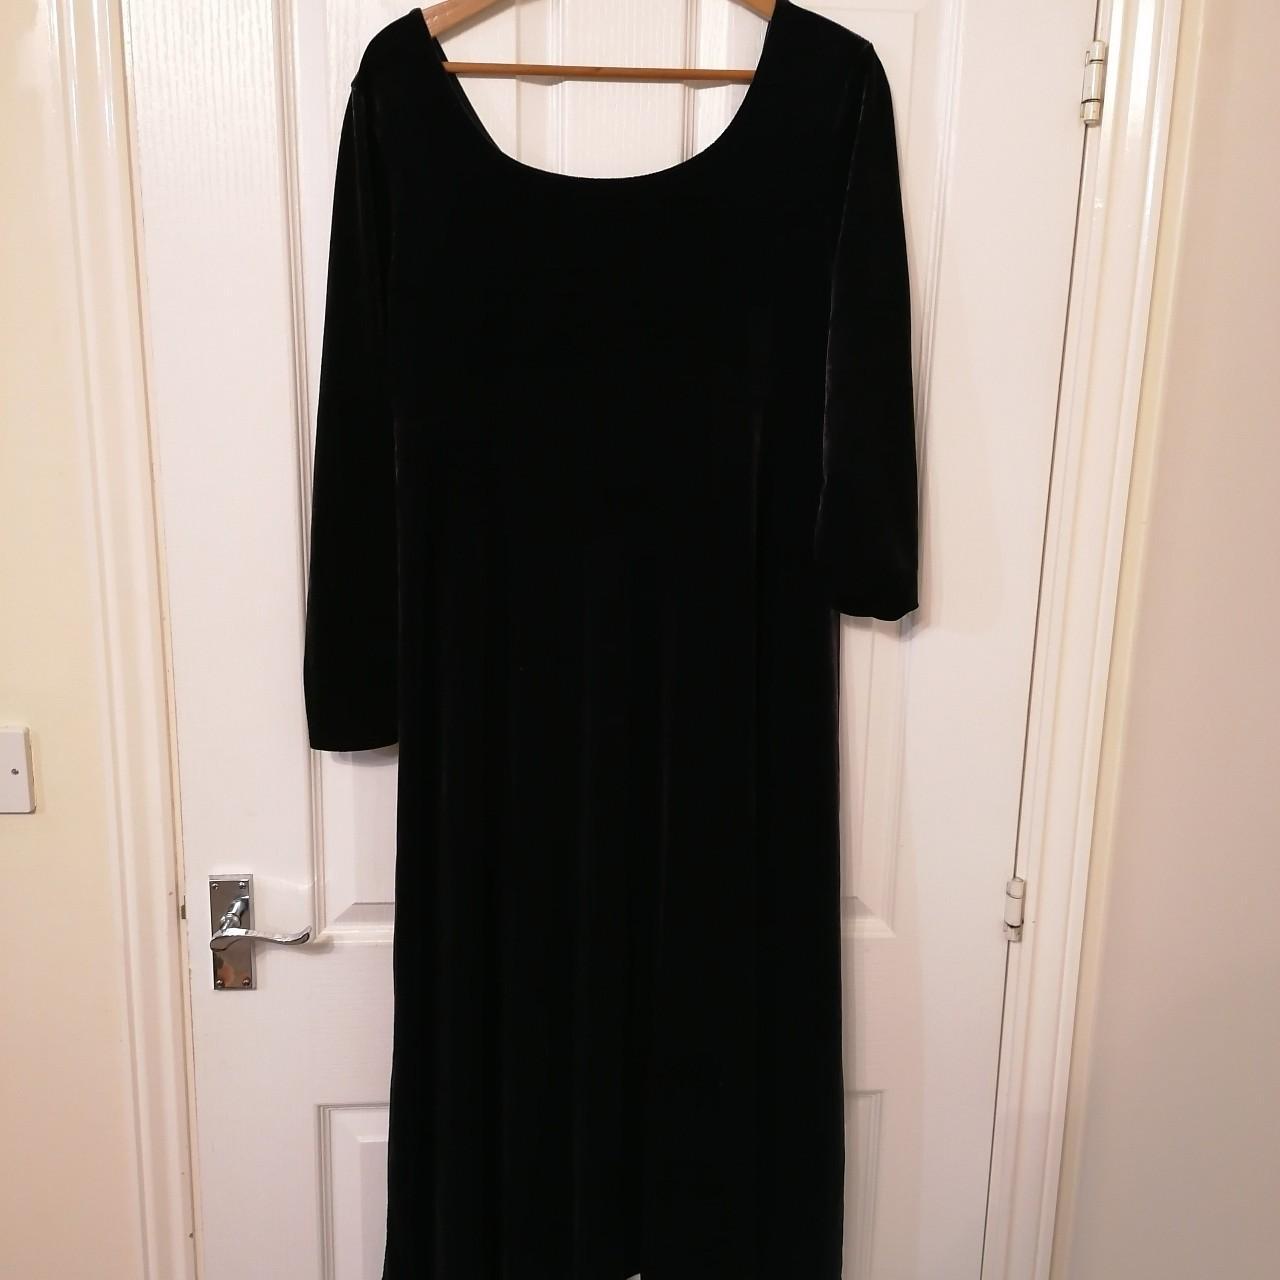 Black velvet floor length long sleeve flowy dress. - Depop